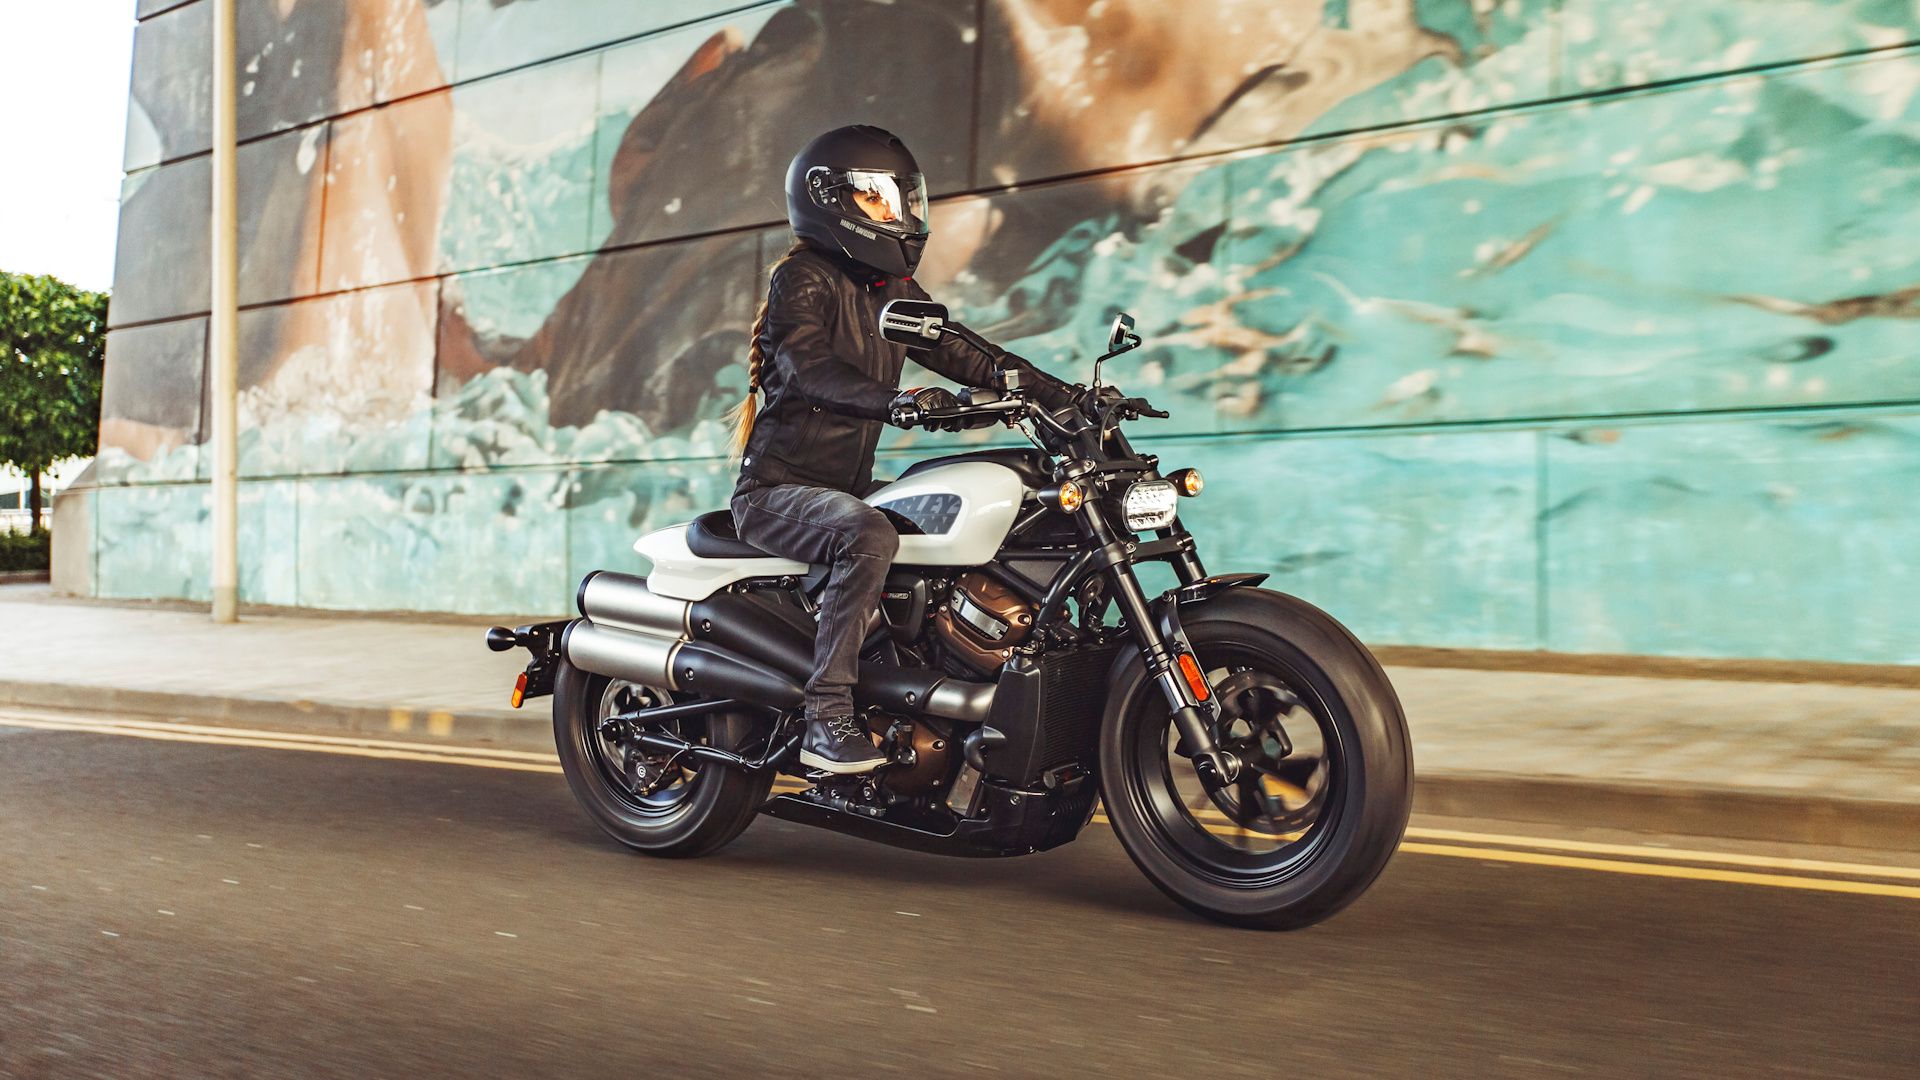 White 2021 Harley-Davidson Sportster S cruising on the road